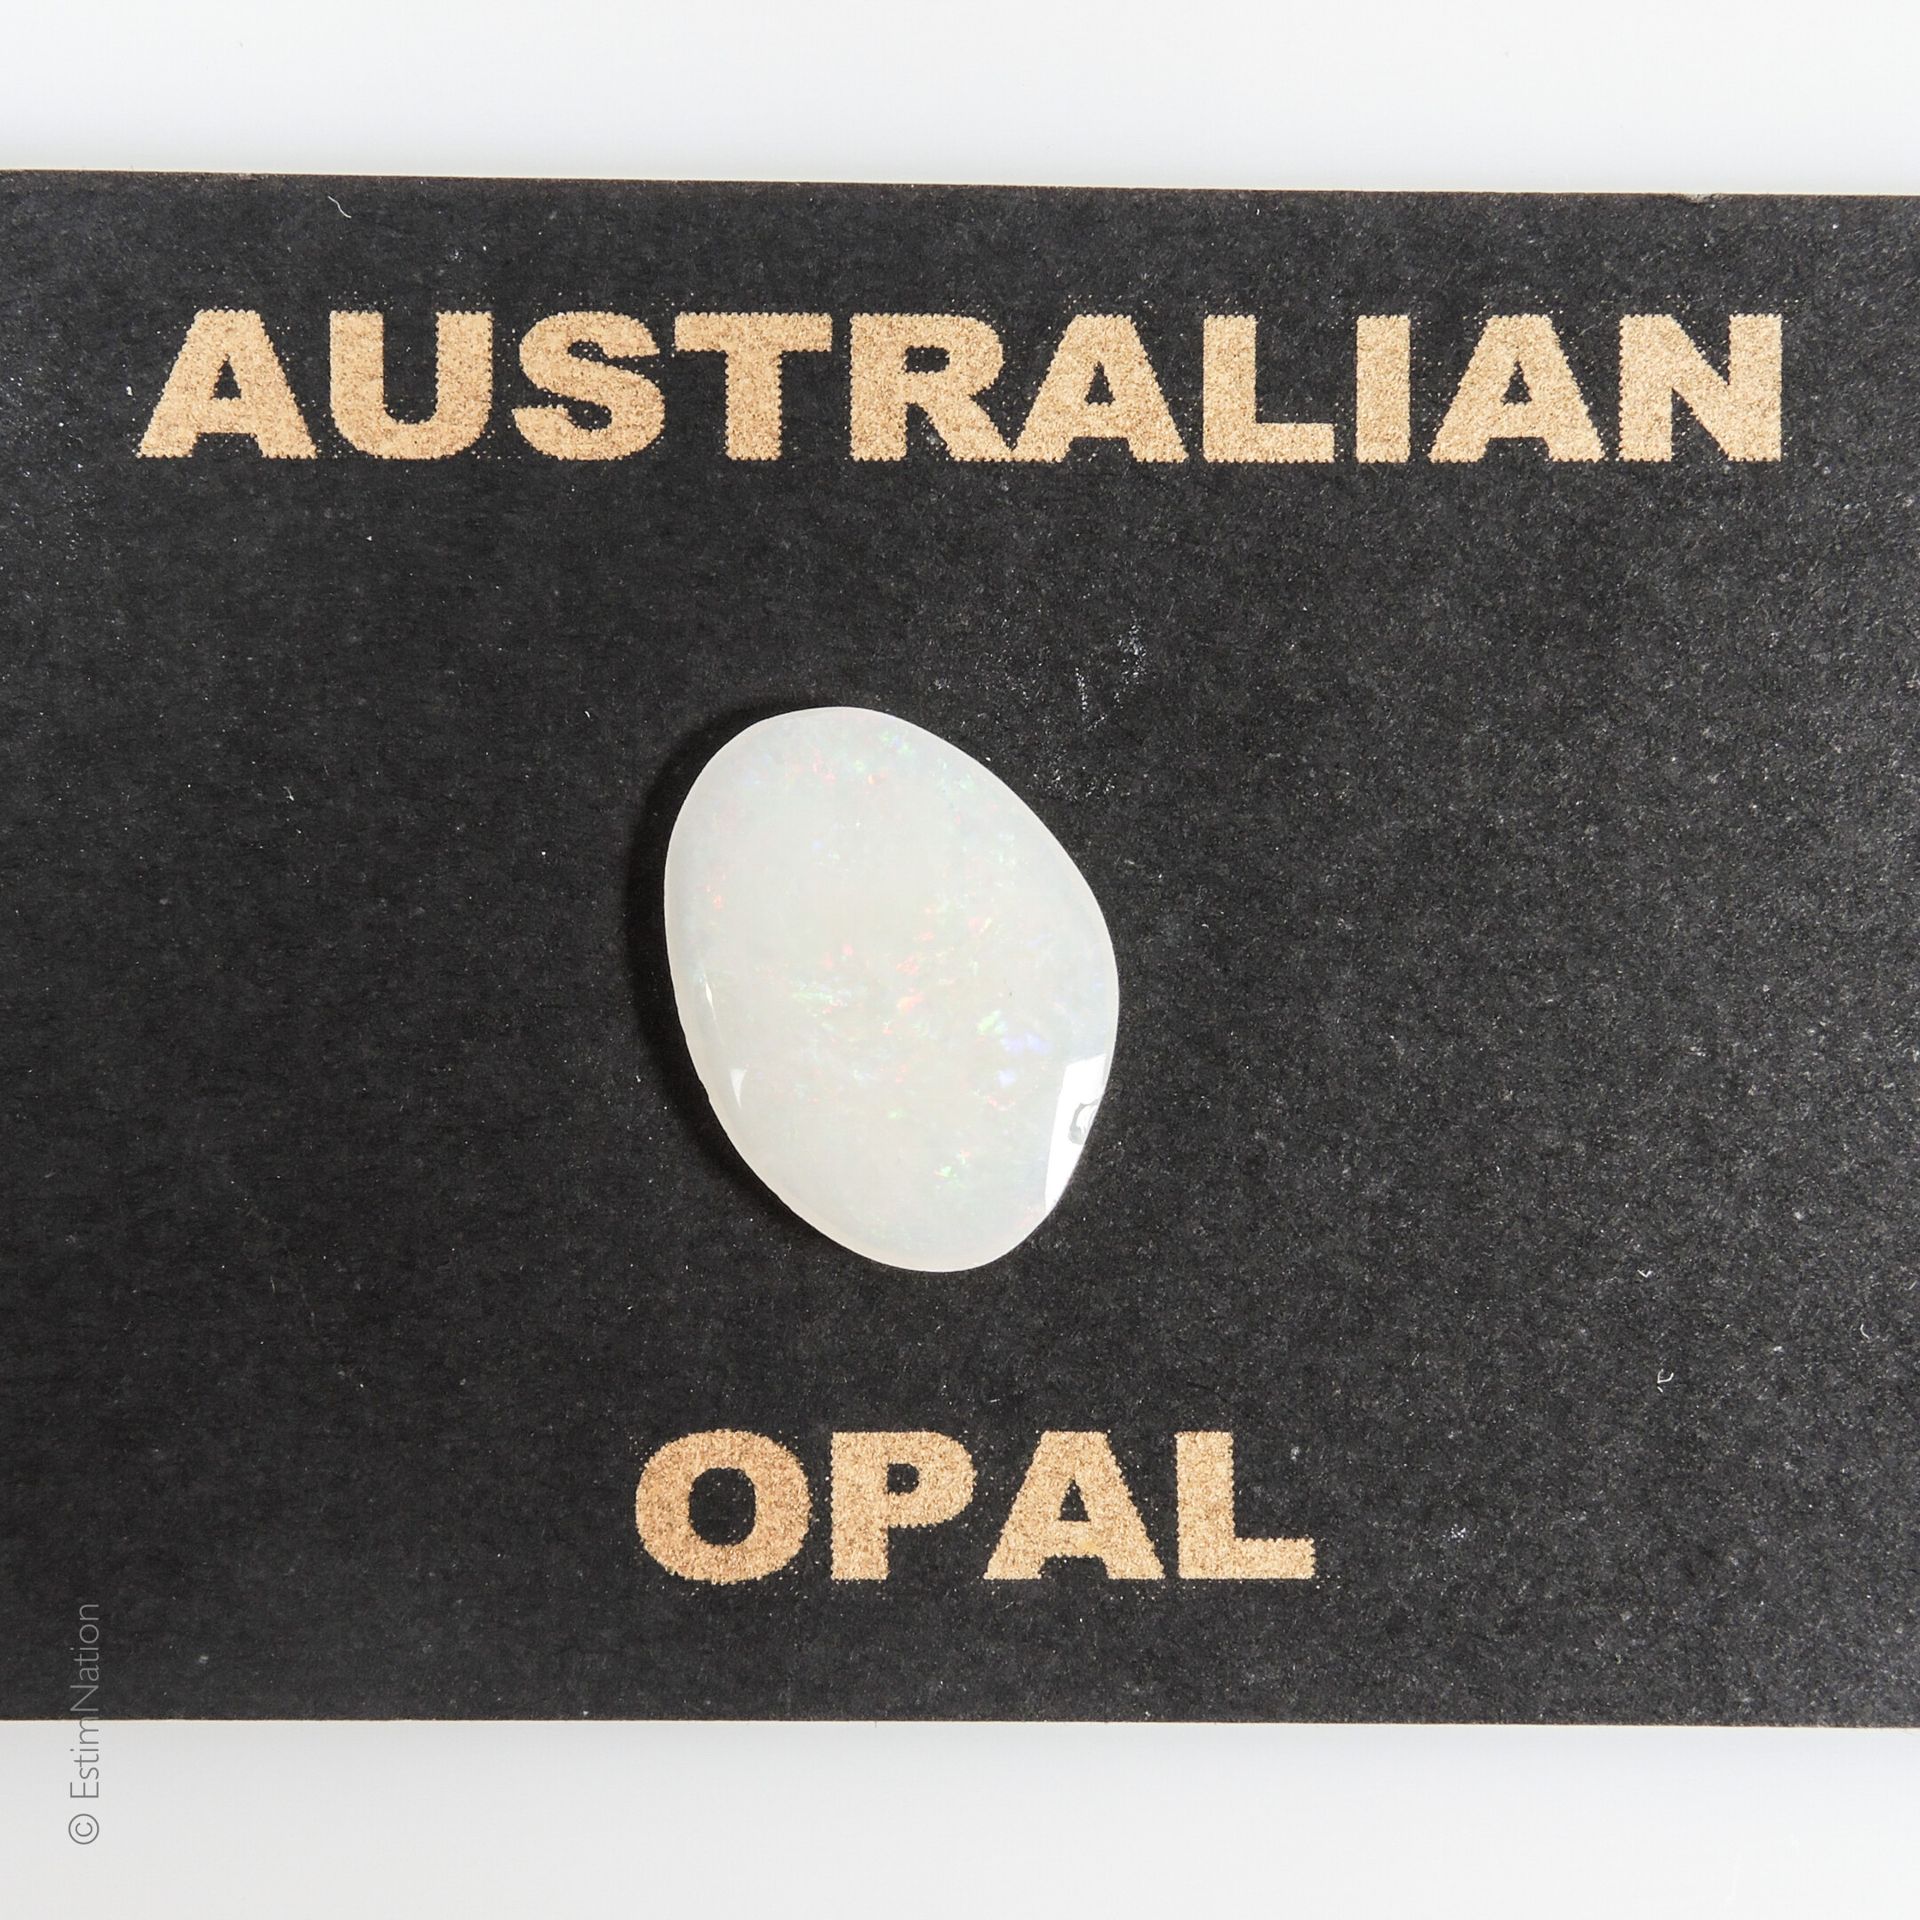 OPALE 1.85 CARAT 椭圆形的蛋白石，重约1.85克拉。呈现在一个纸板箱上。

出处：澳大利亚